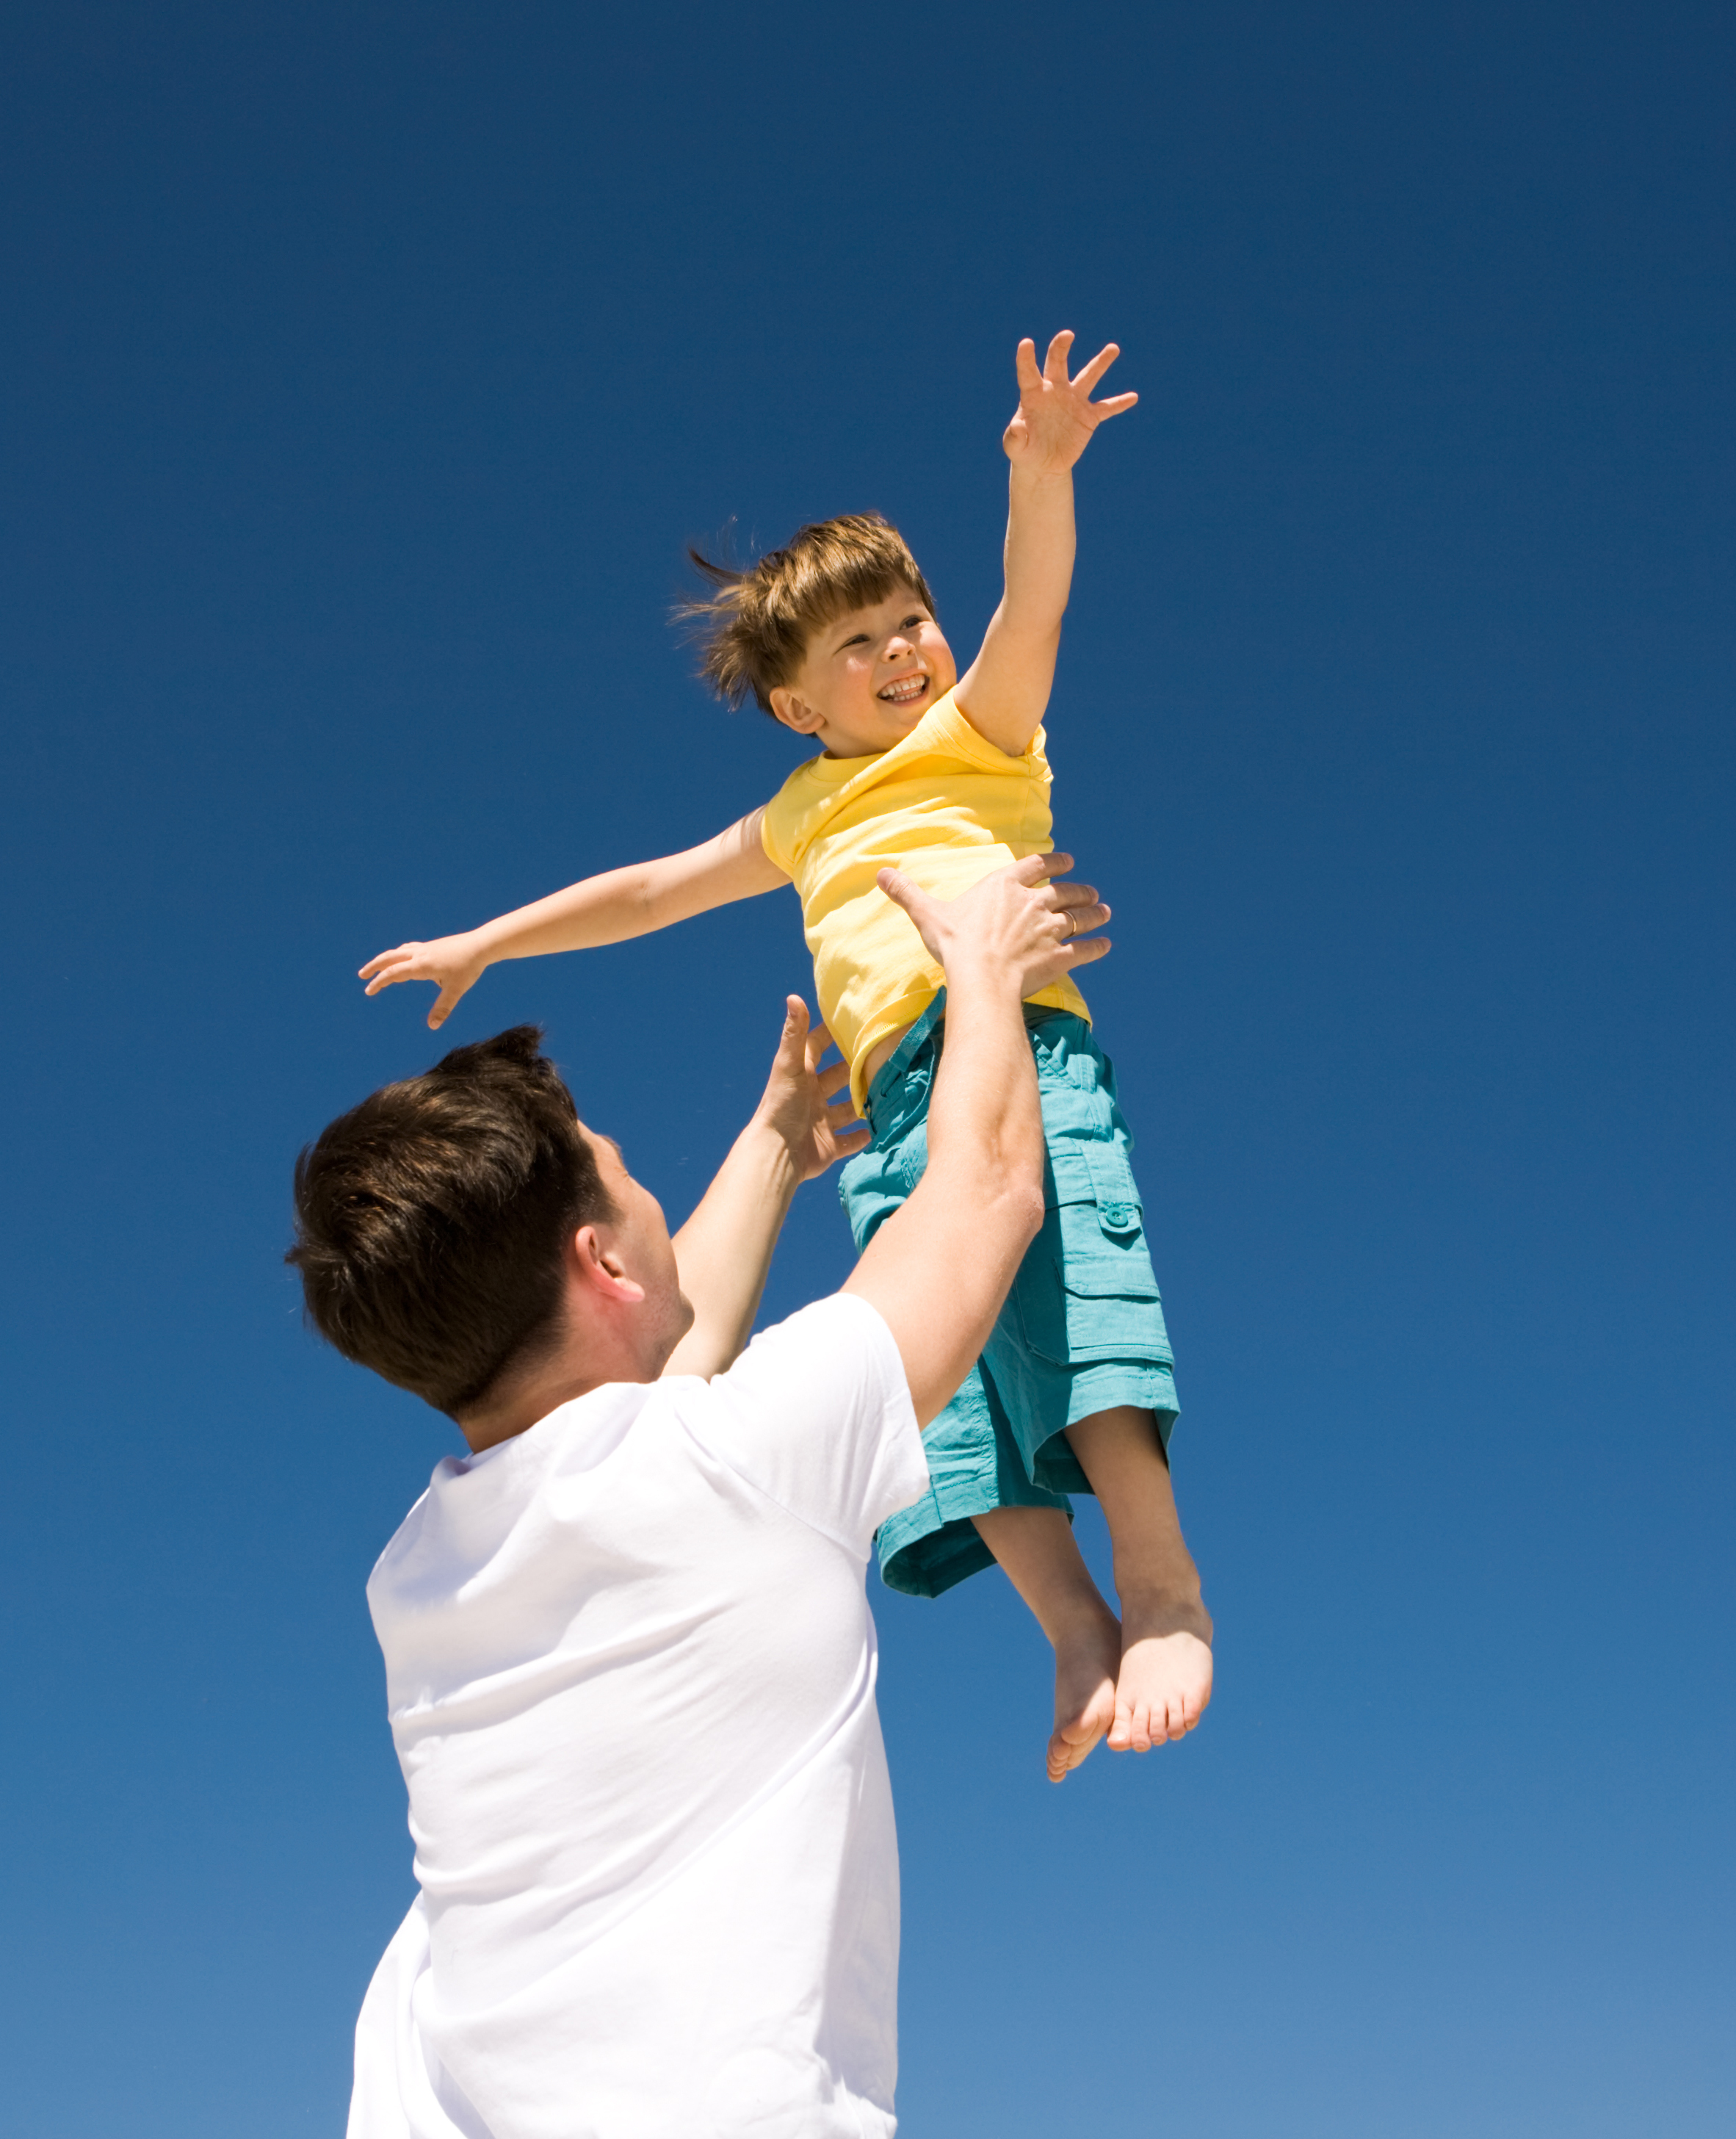 Un homme jouant avec un petit garçon à l'extérieur | Source : Shutterstock